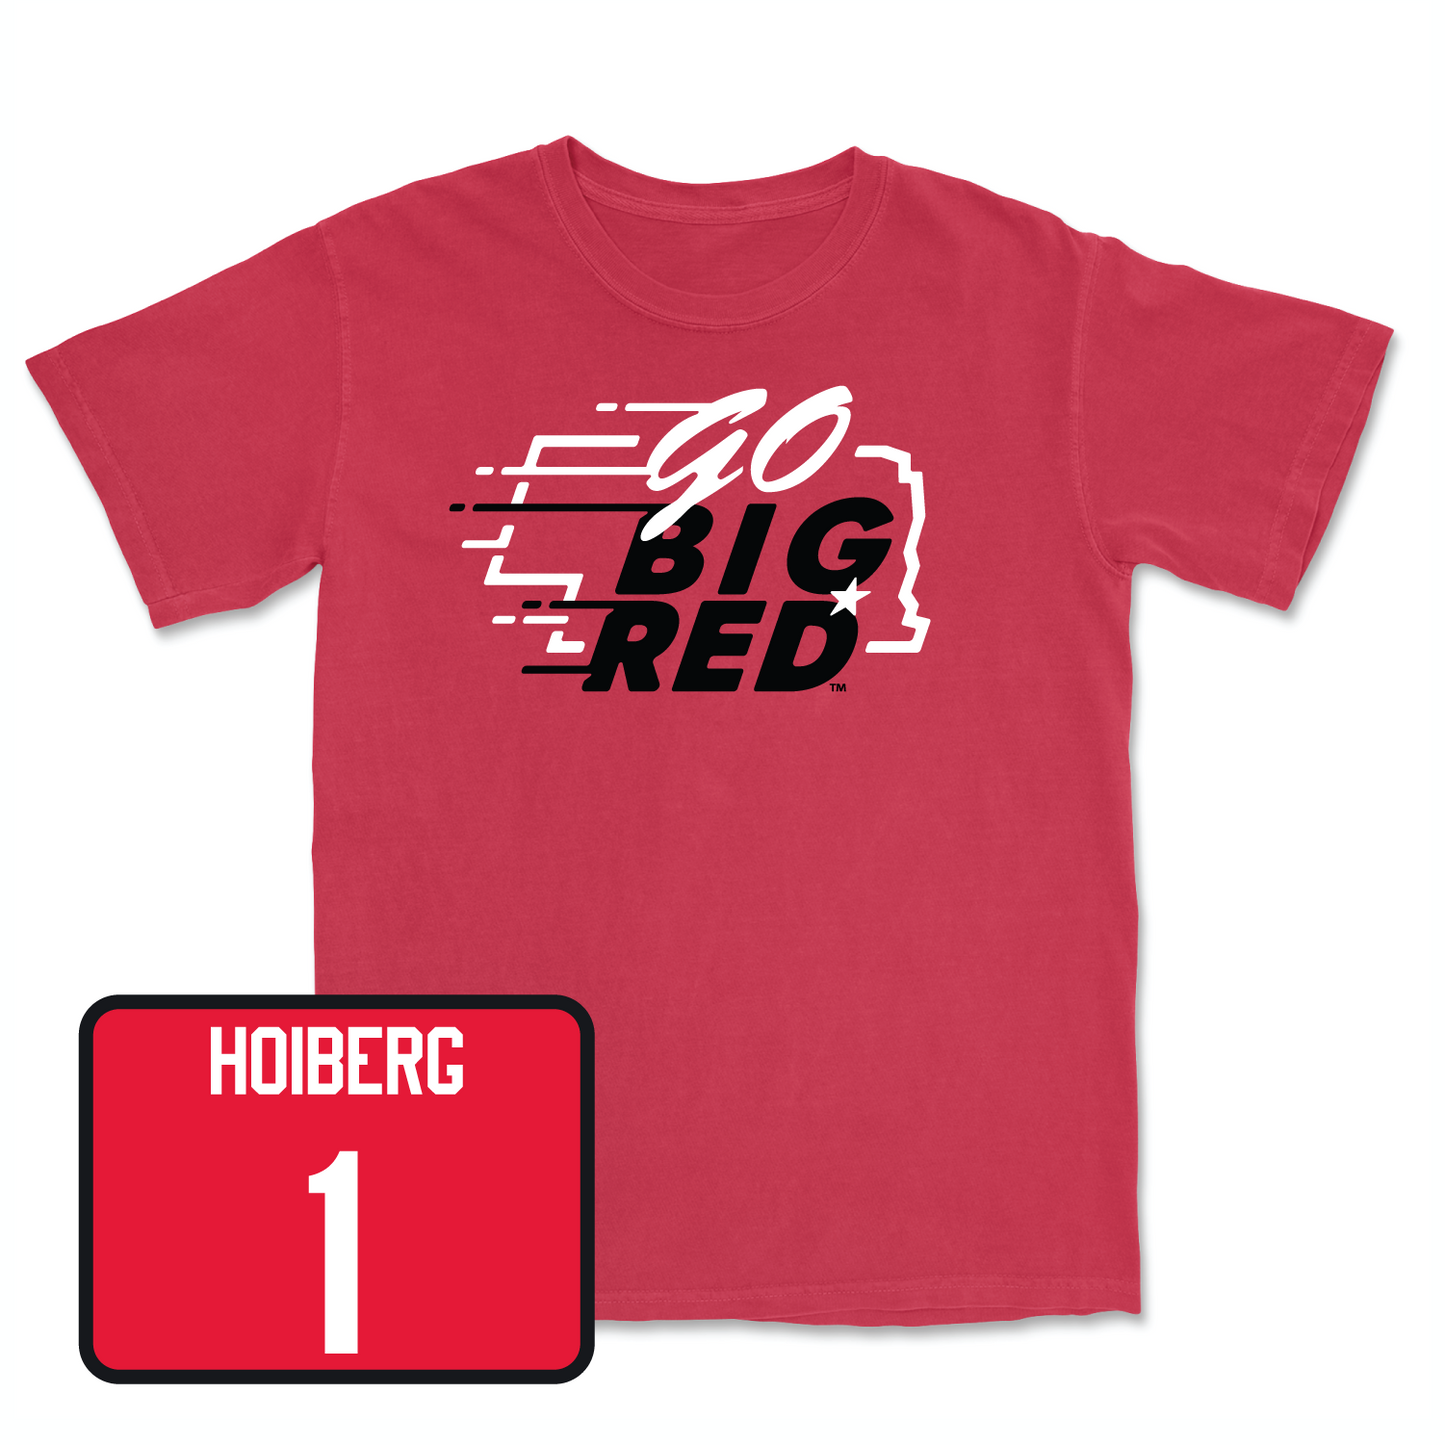 Red Men's Basketball GBR Tee 4X-Large / Samuel Hoiberg | #1